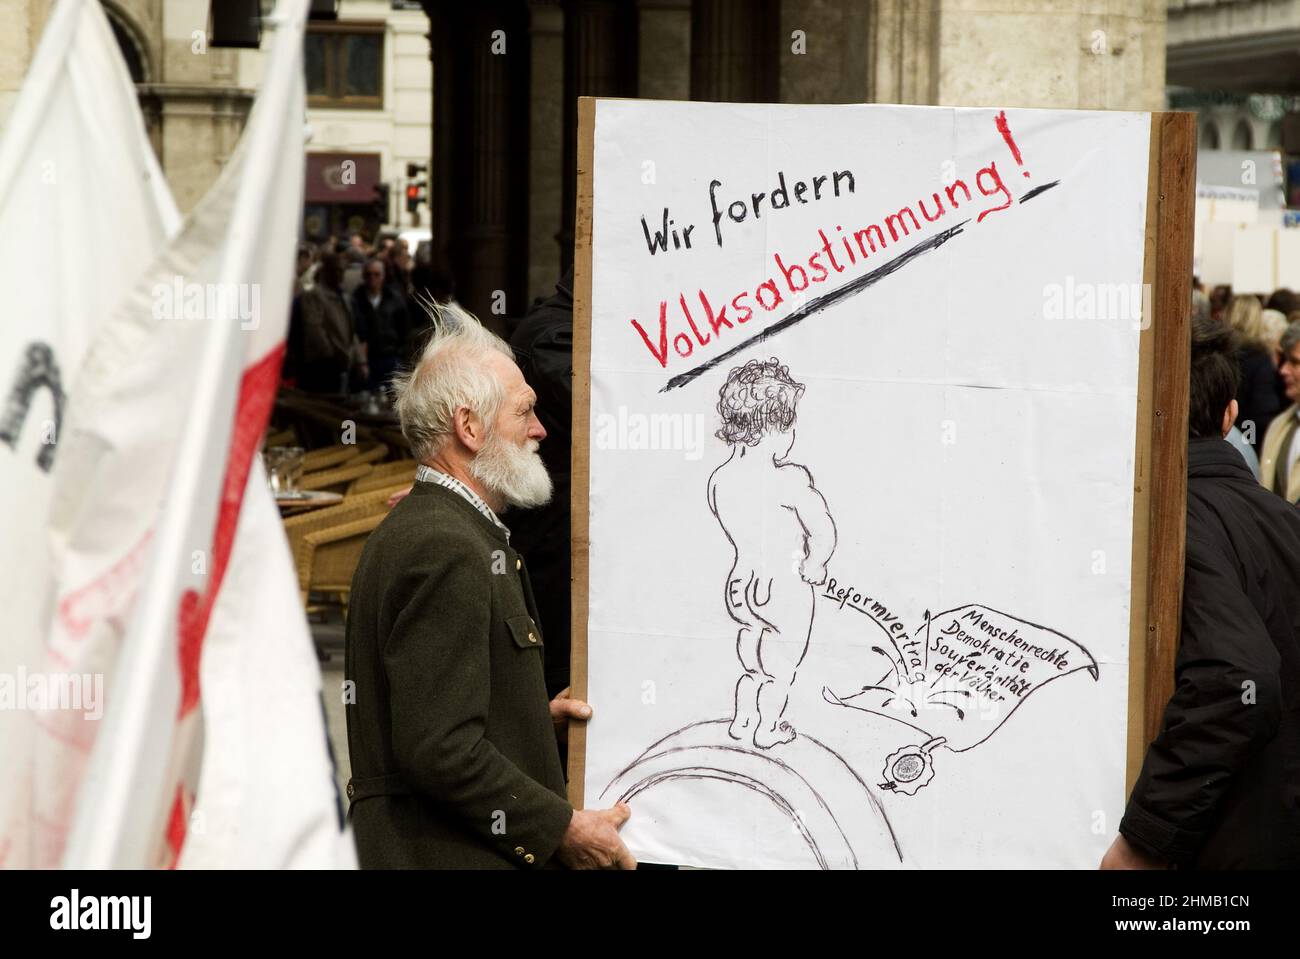 Vienna, Austria. March 23, 2008. Demonstration for referendum against Lisbon Treaty in Vienna. Inscription 'We demand referendum' Stock Photo